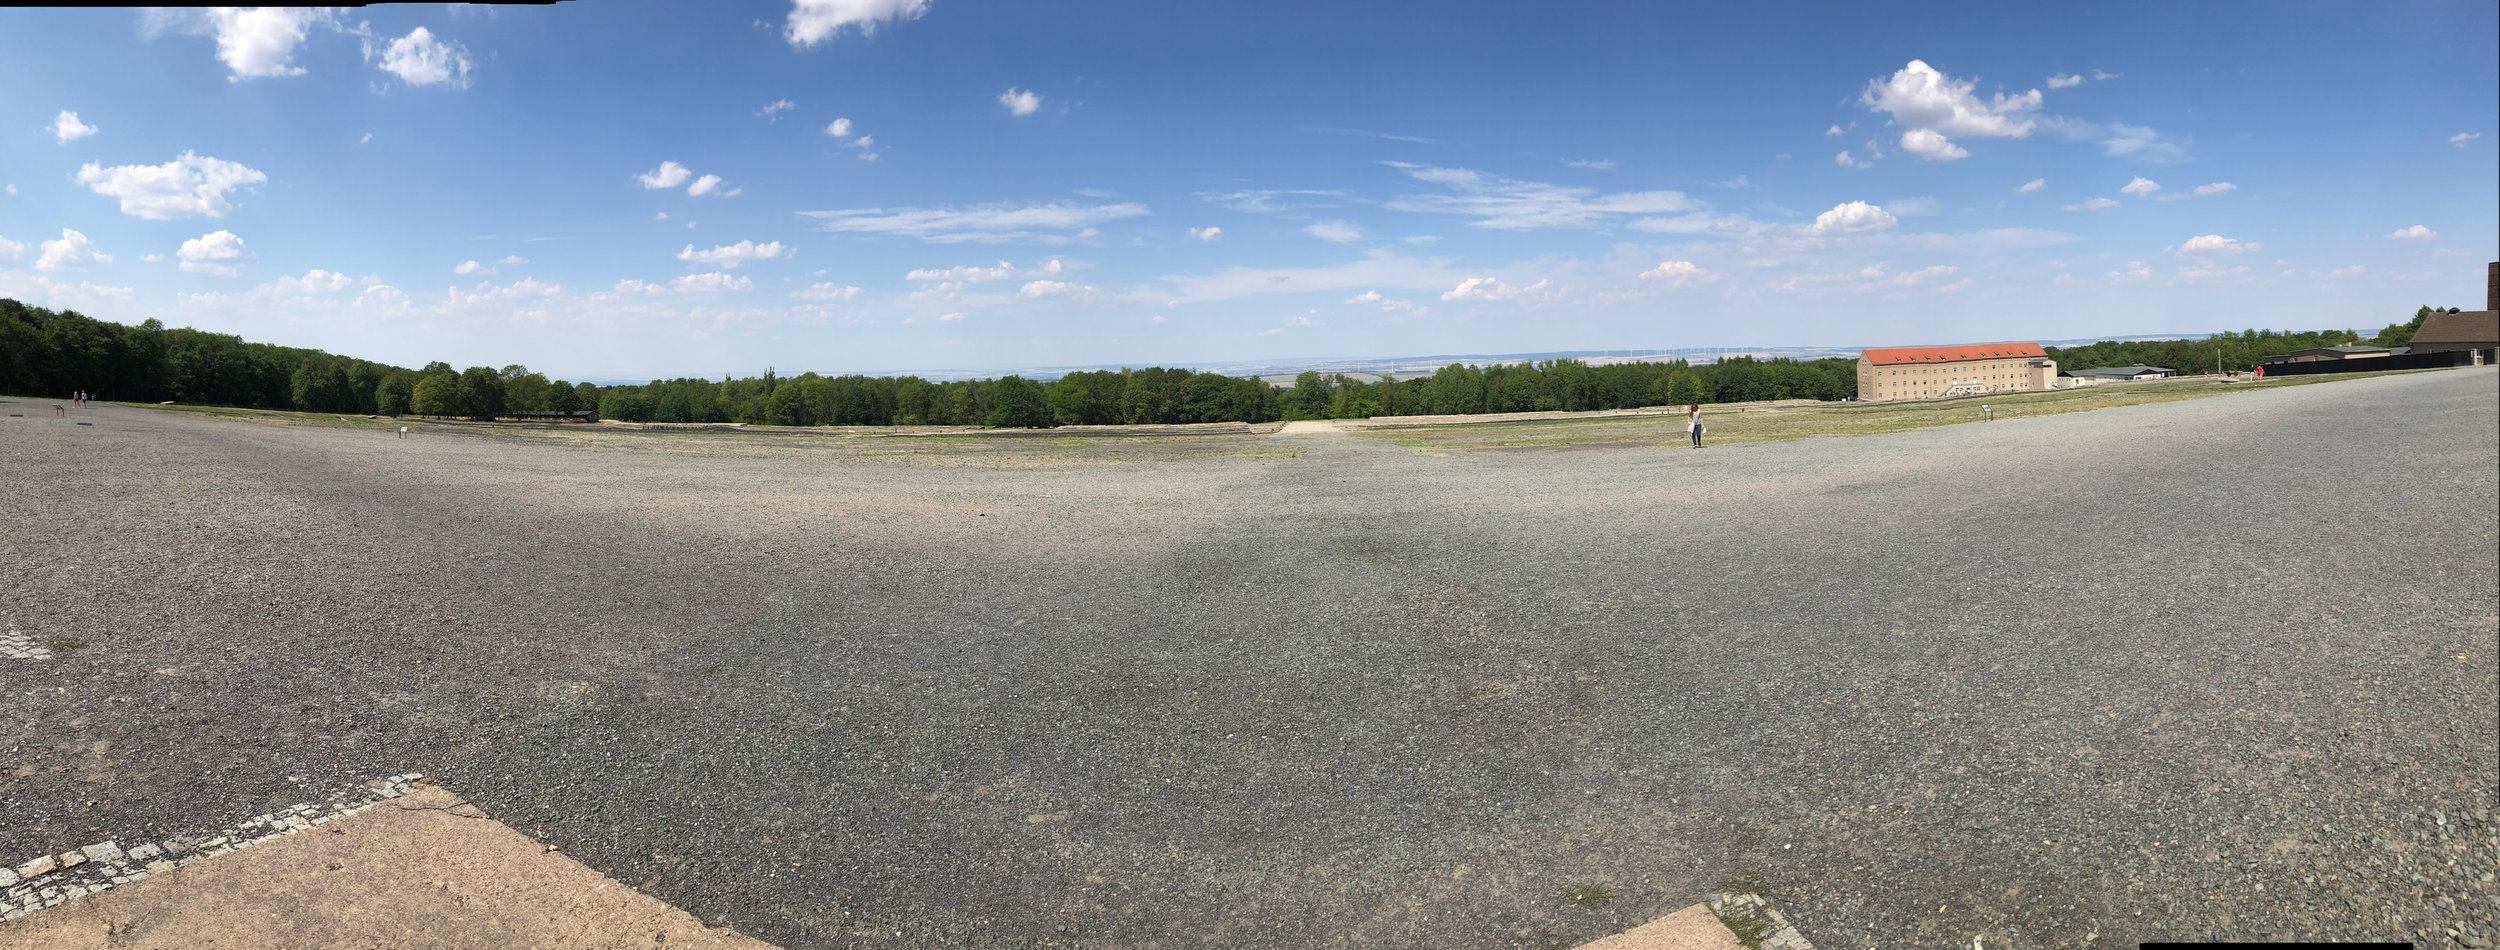 Panoramic of Buchenwald